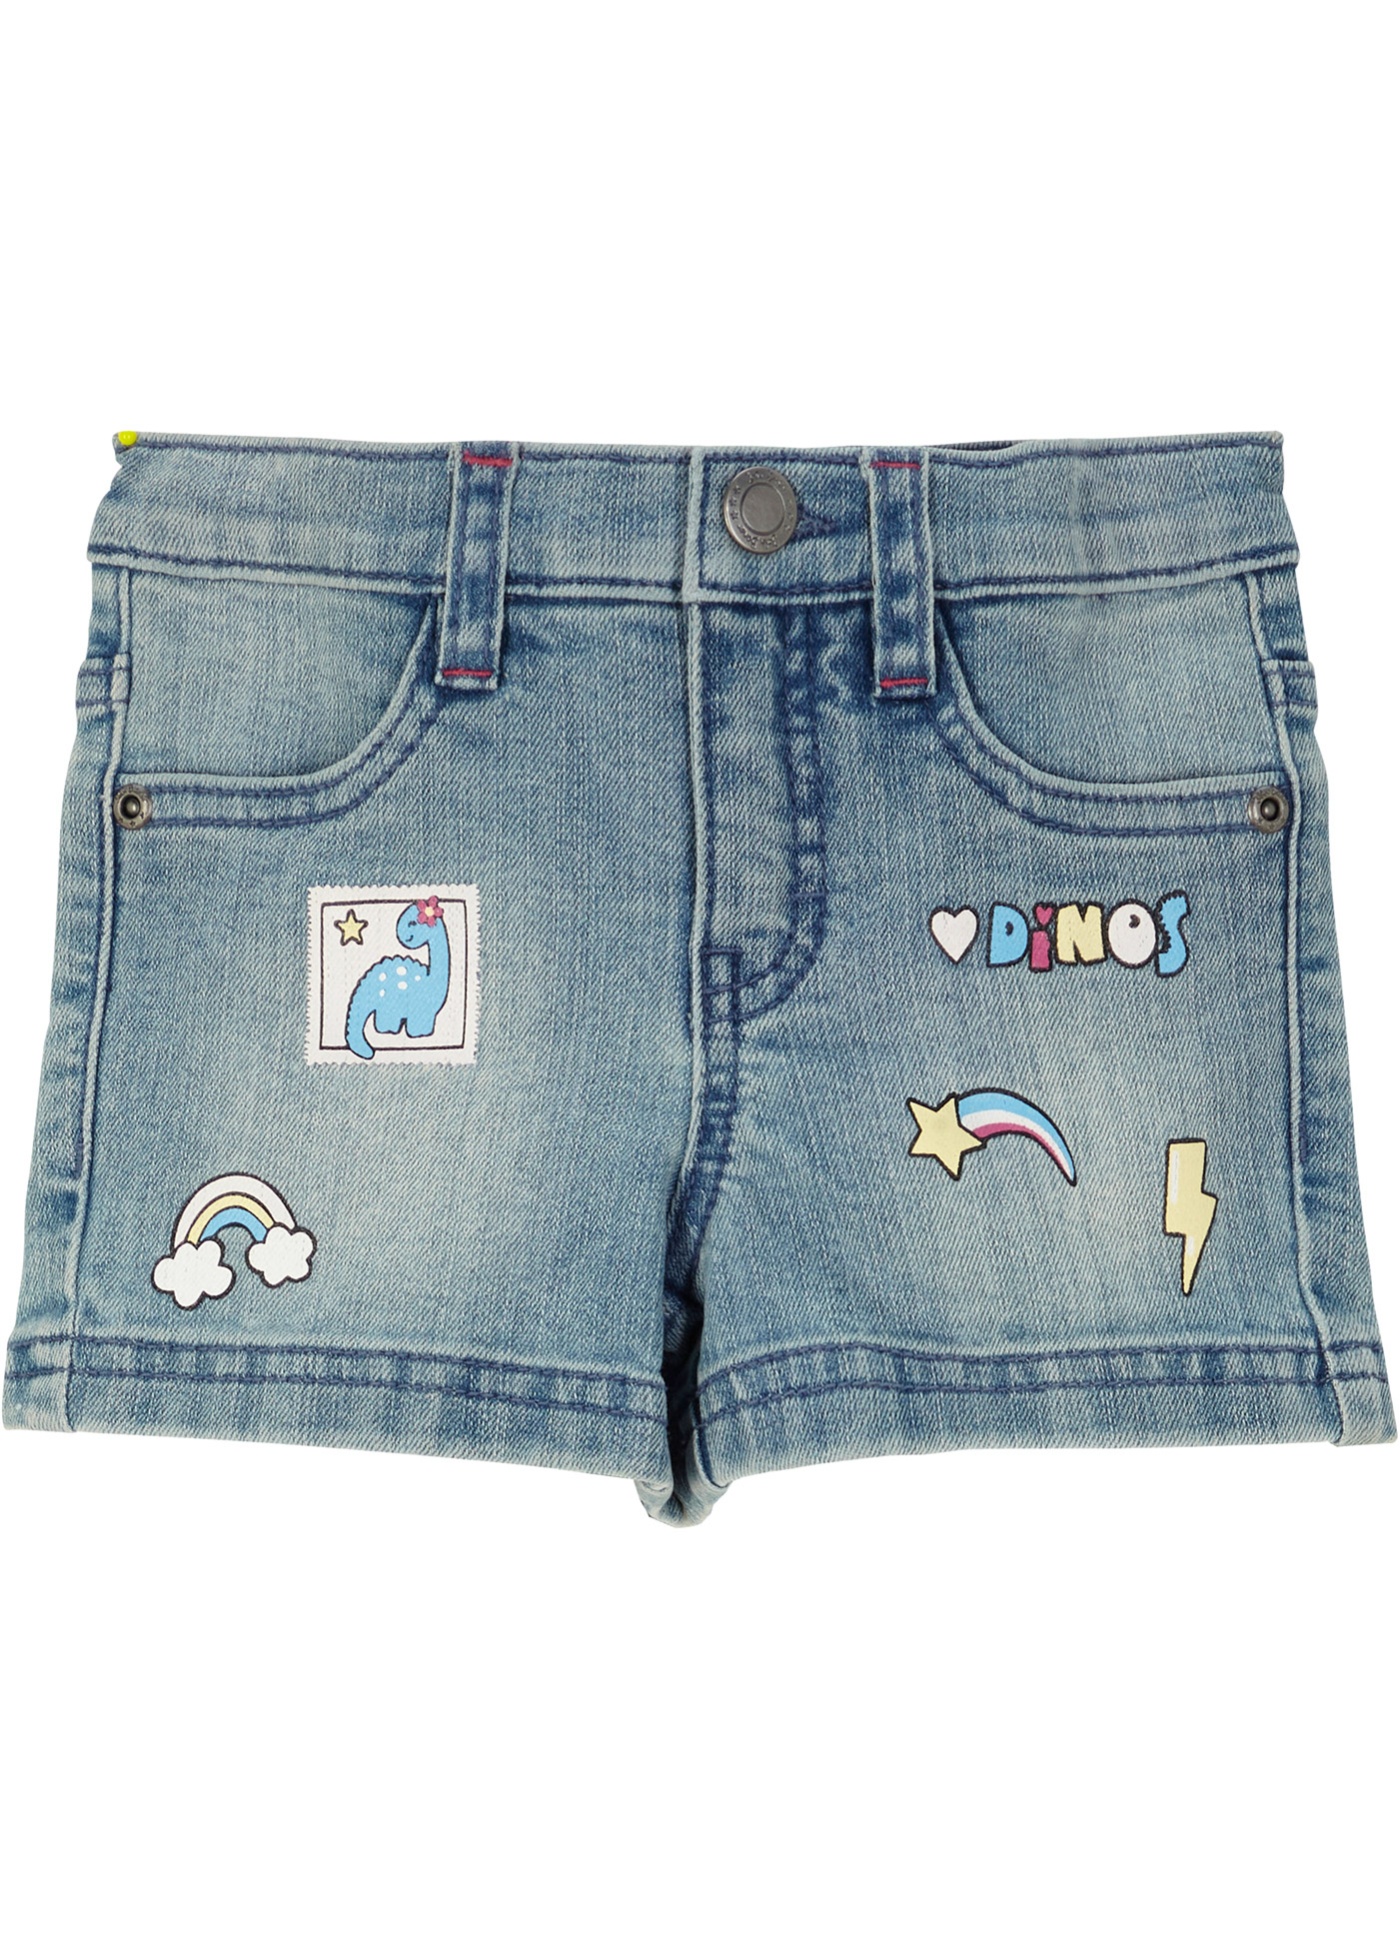 Meisjes jeans short met unicorn